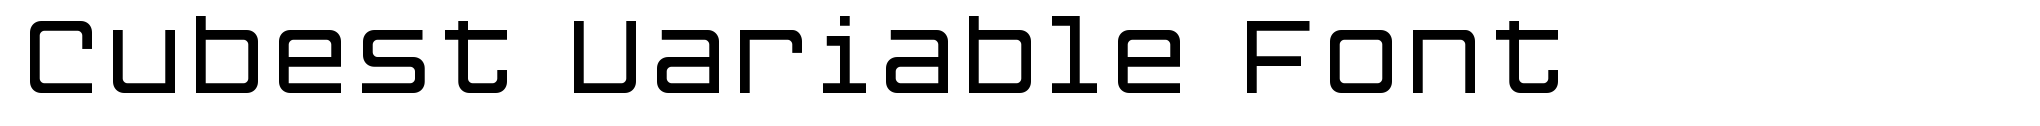 Cubest Variable Font image